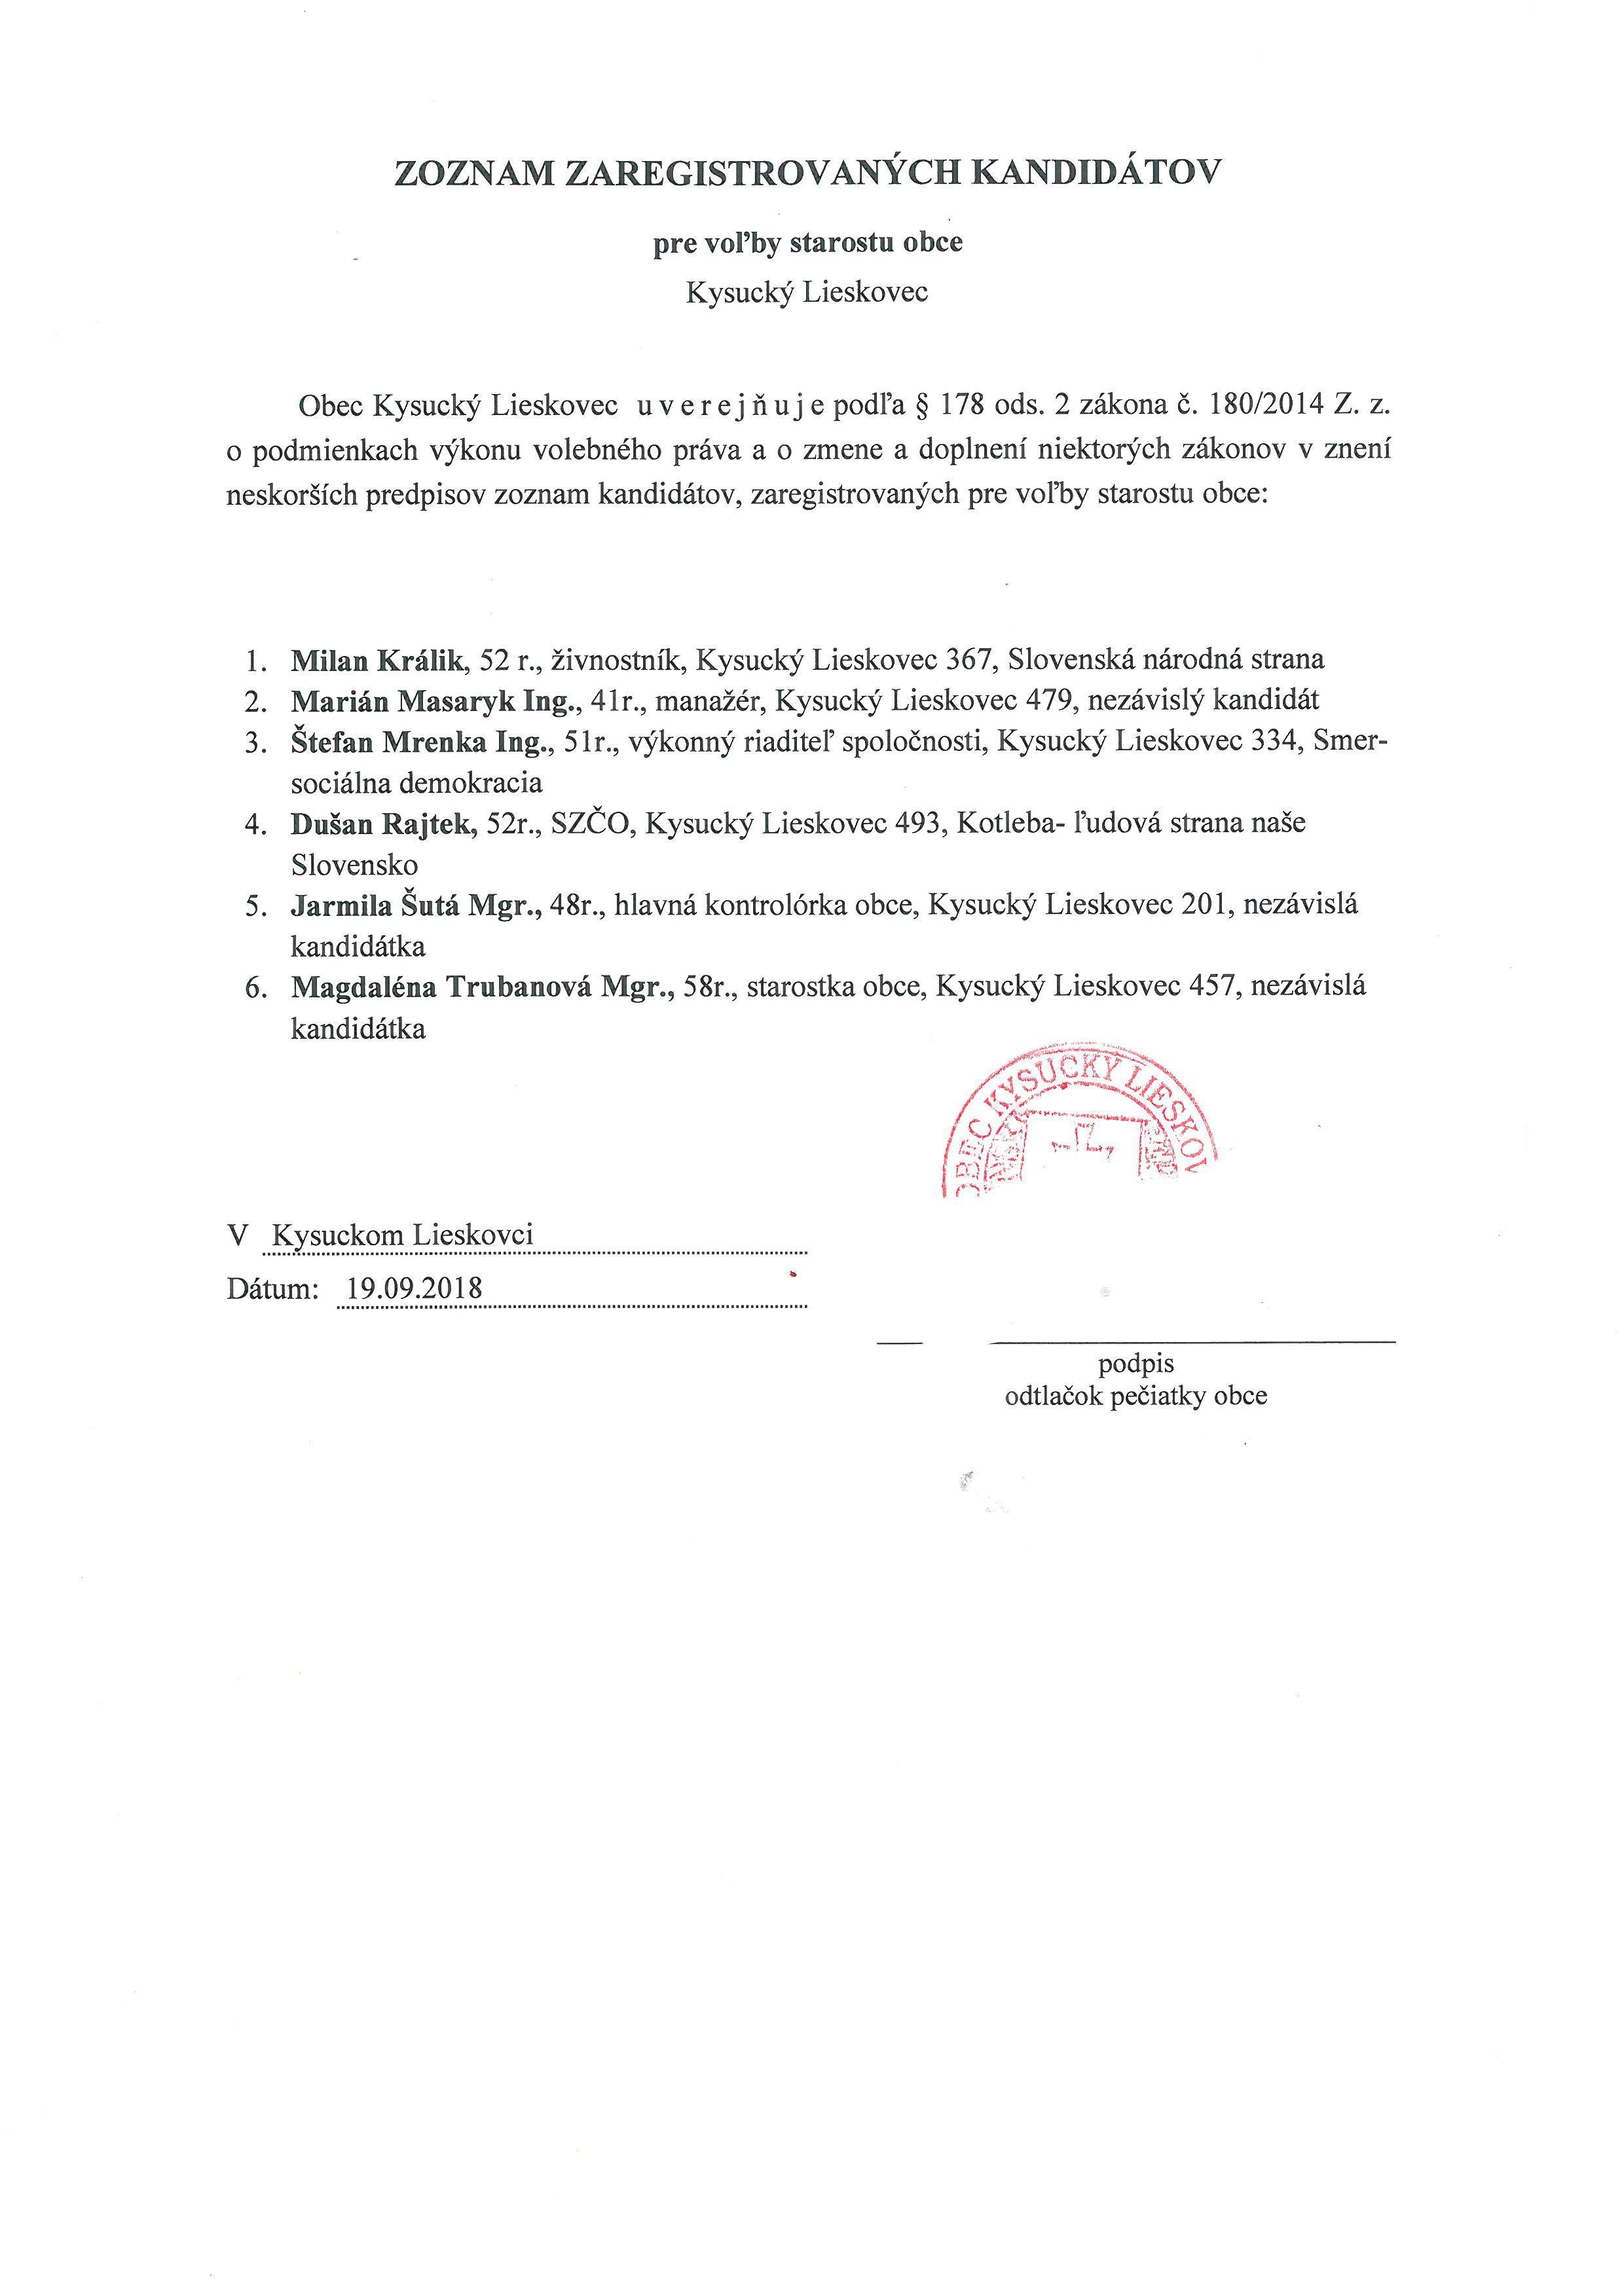 Zoznam zaregistrovaných kandidátov pre voľby starostu obce Kys.Lieskovec - platný po revidovaní miestnou volebnou komisiou obce Kysucký Lieskovec  - starosta